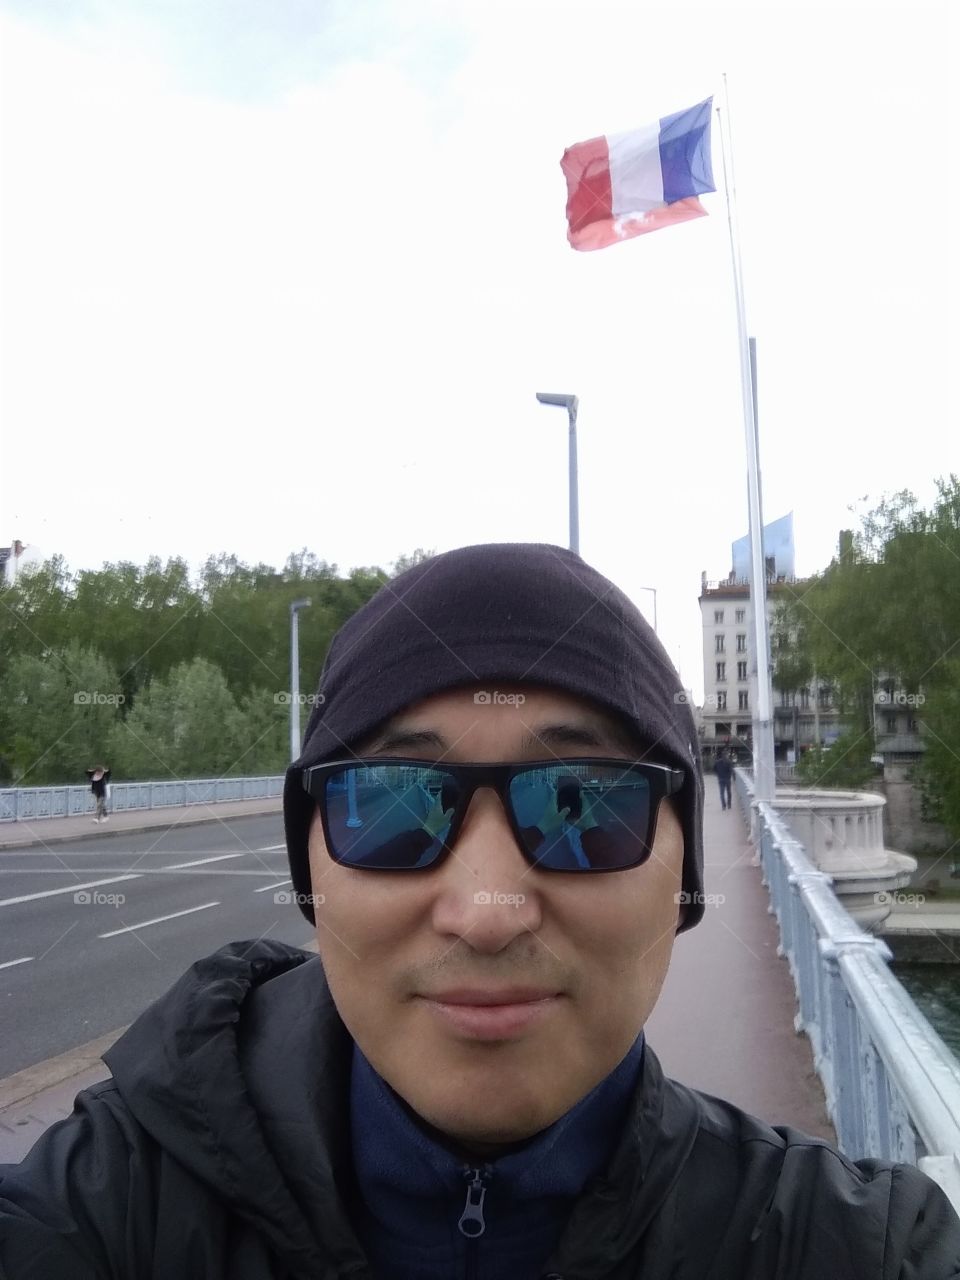 Bridge, Lyon, France